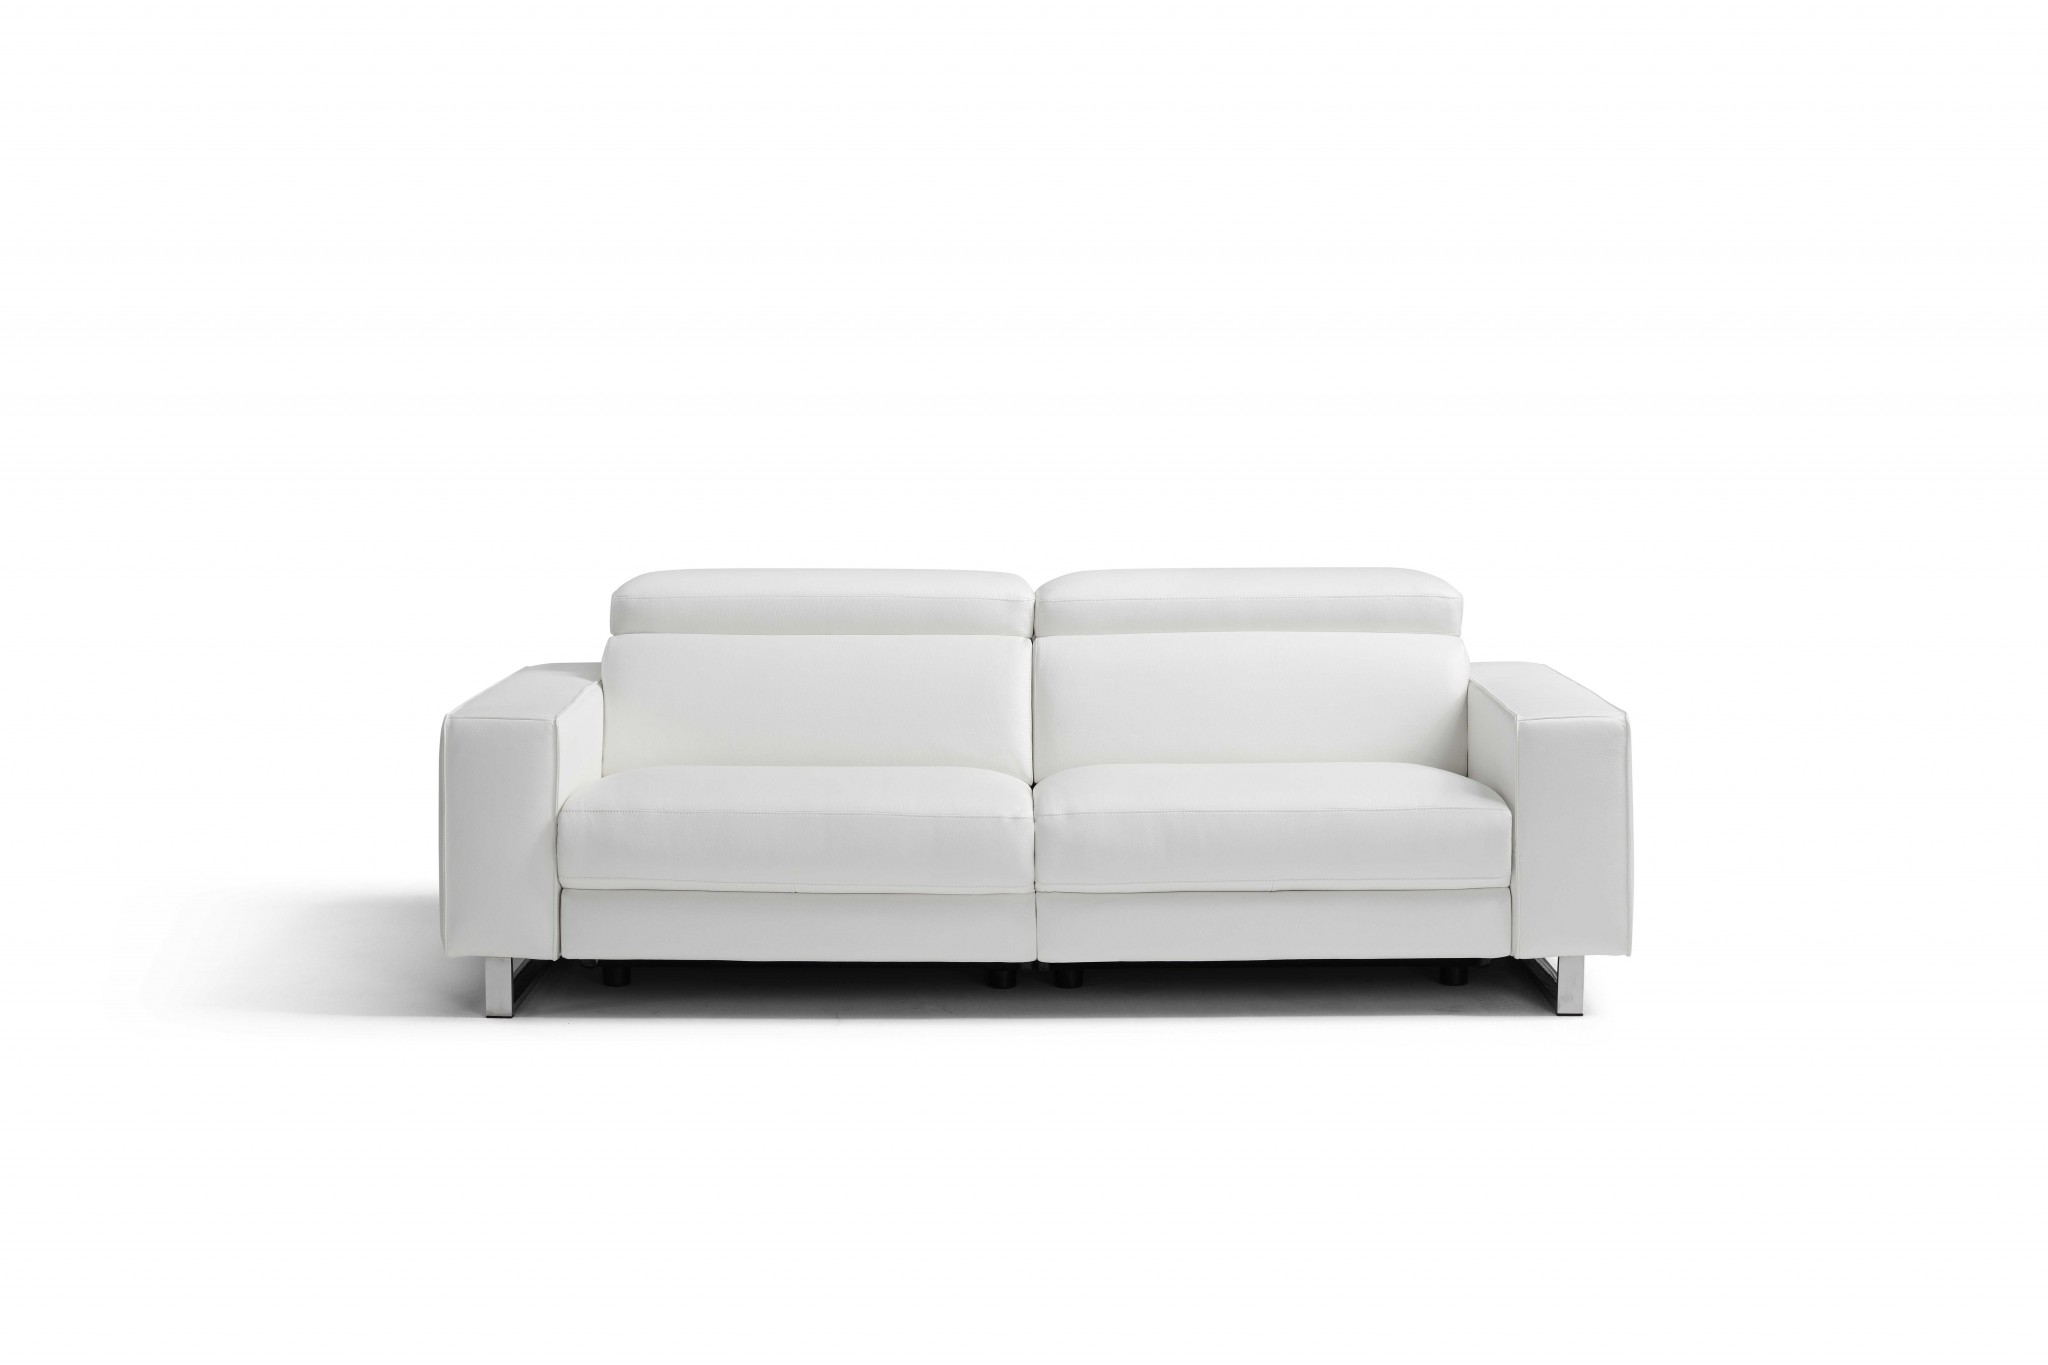 32" X 89" X 43" White Leather Sofa